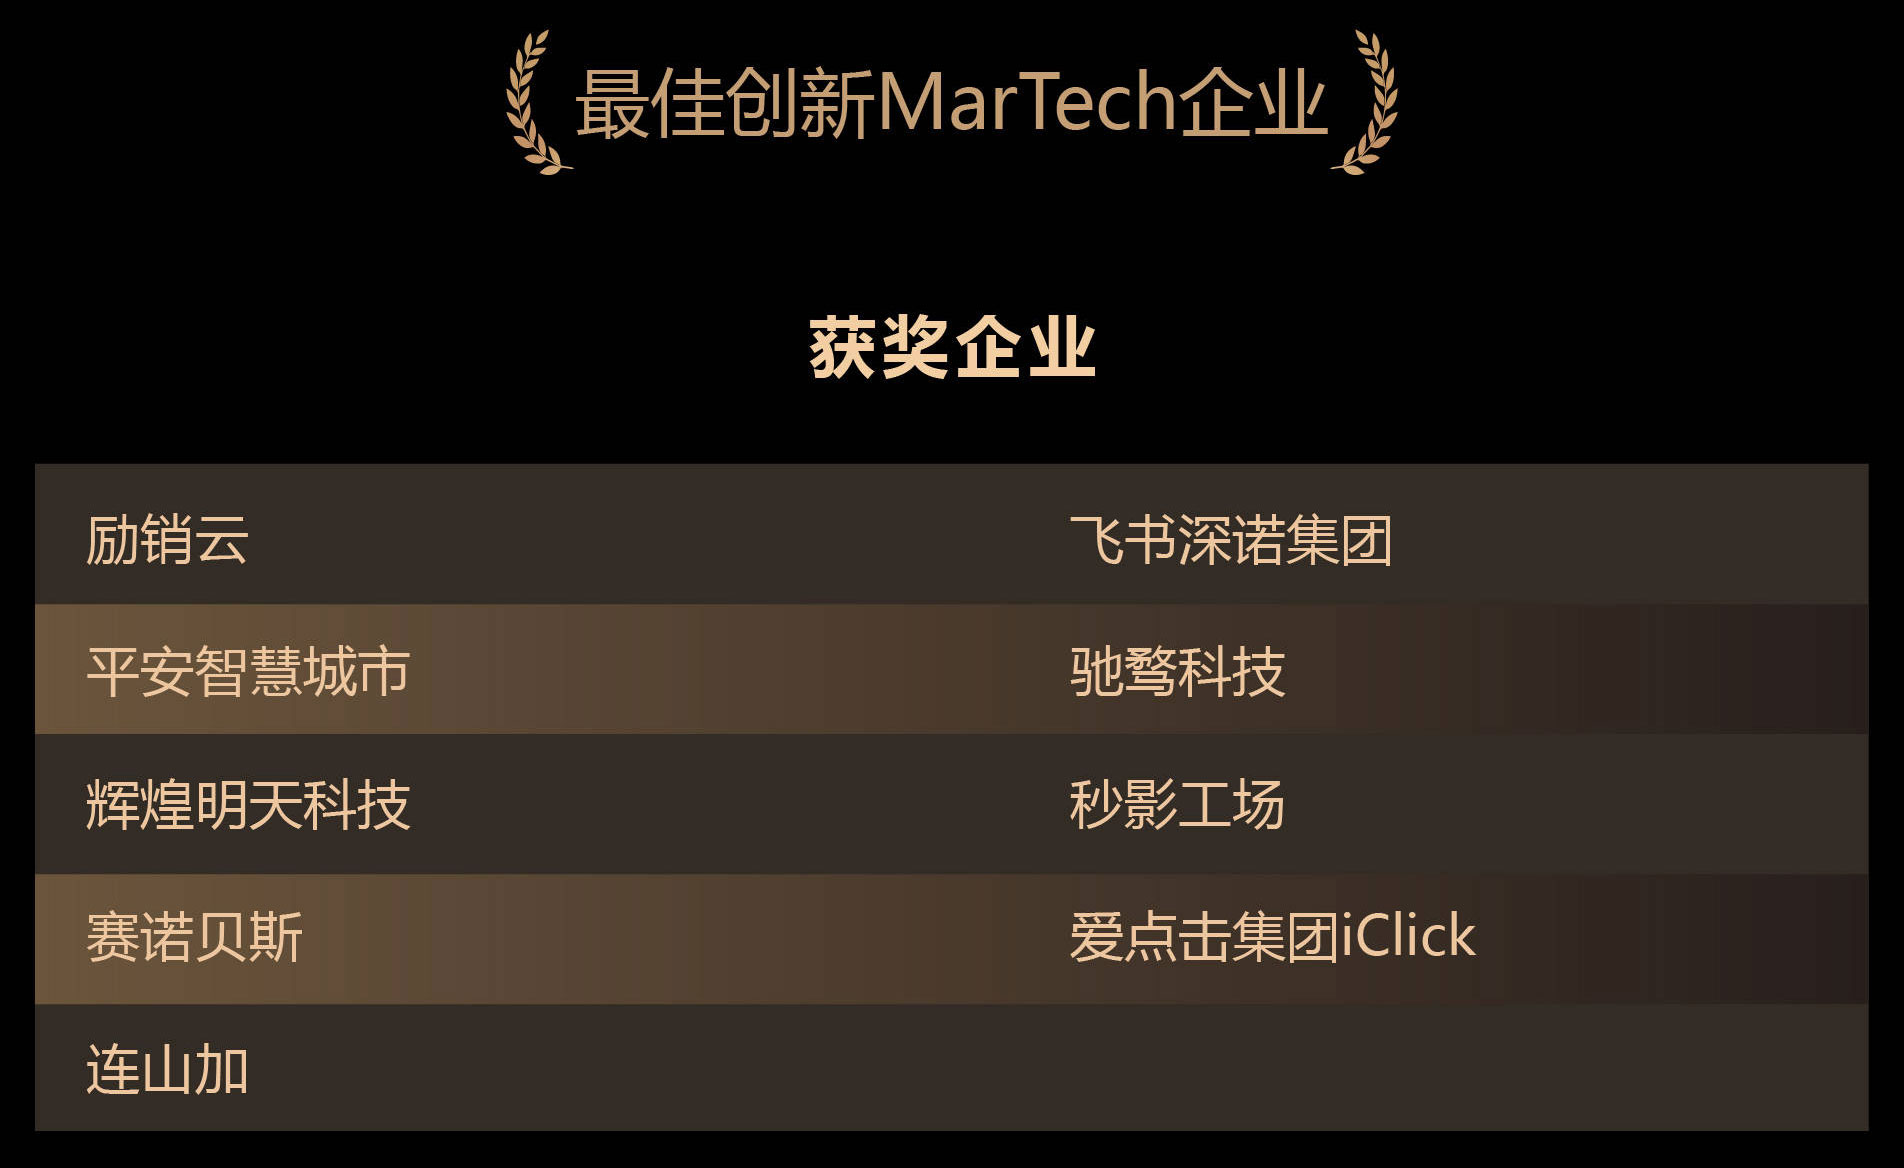 飞书深诺集团获金瑞营销奖2021年度最佳创新MarTech企业